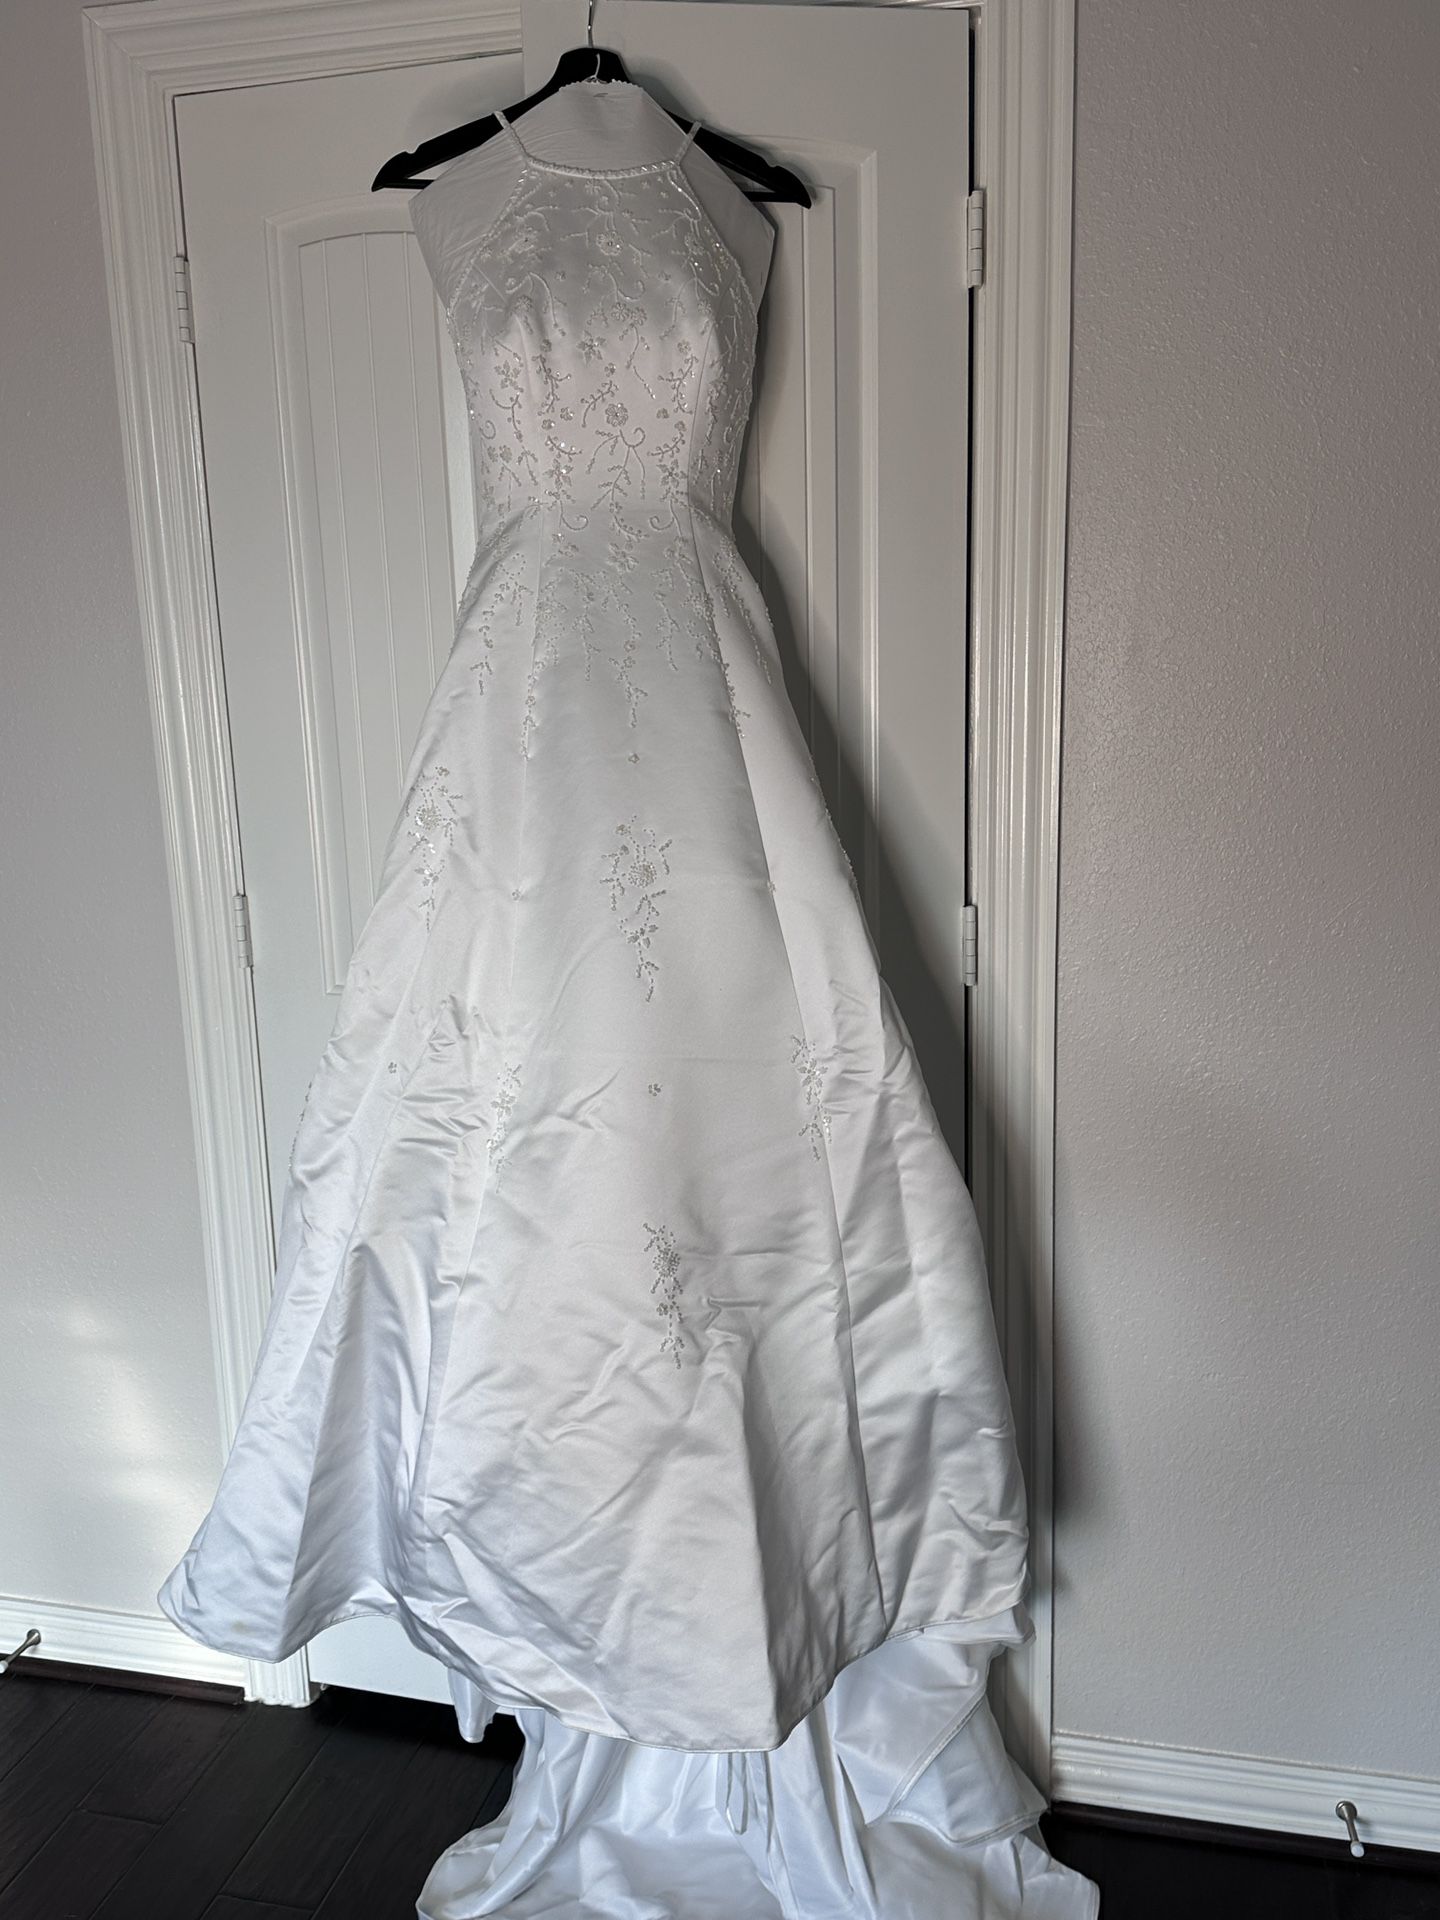 Wedding Dress Size 4